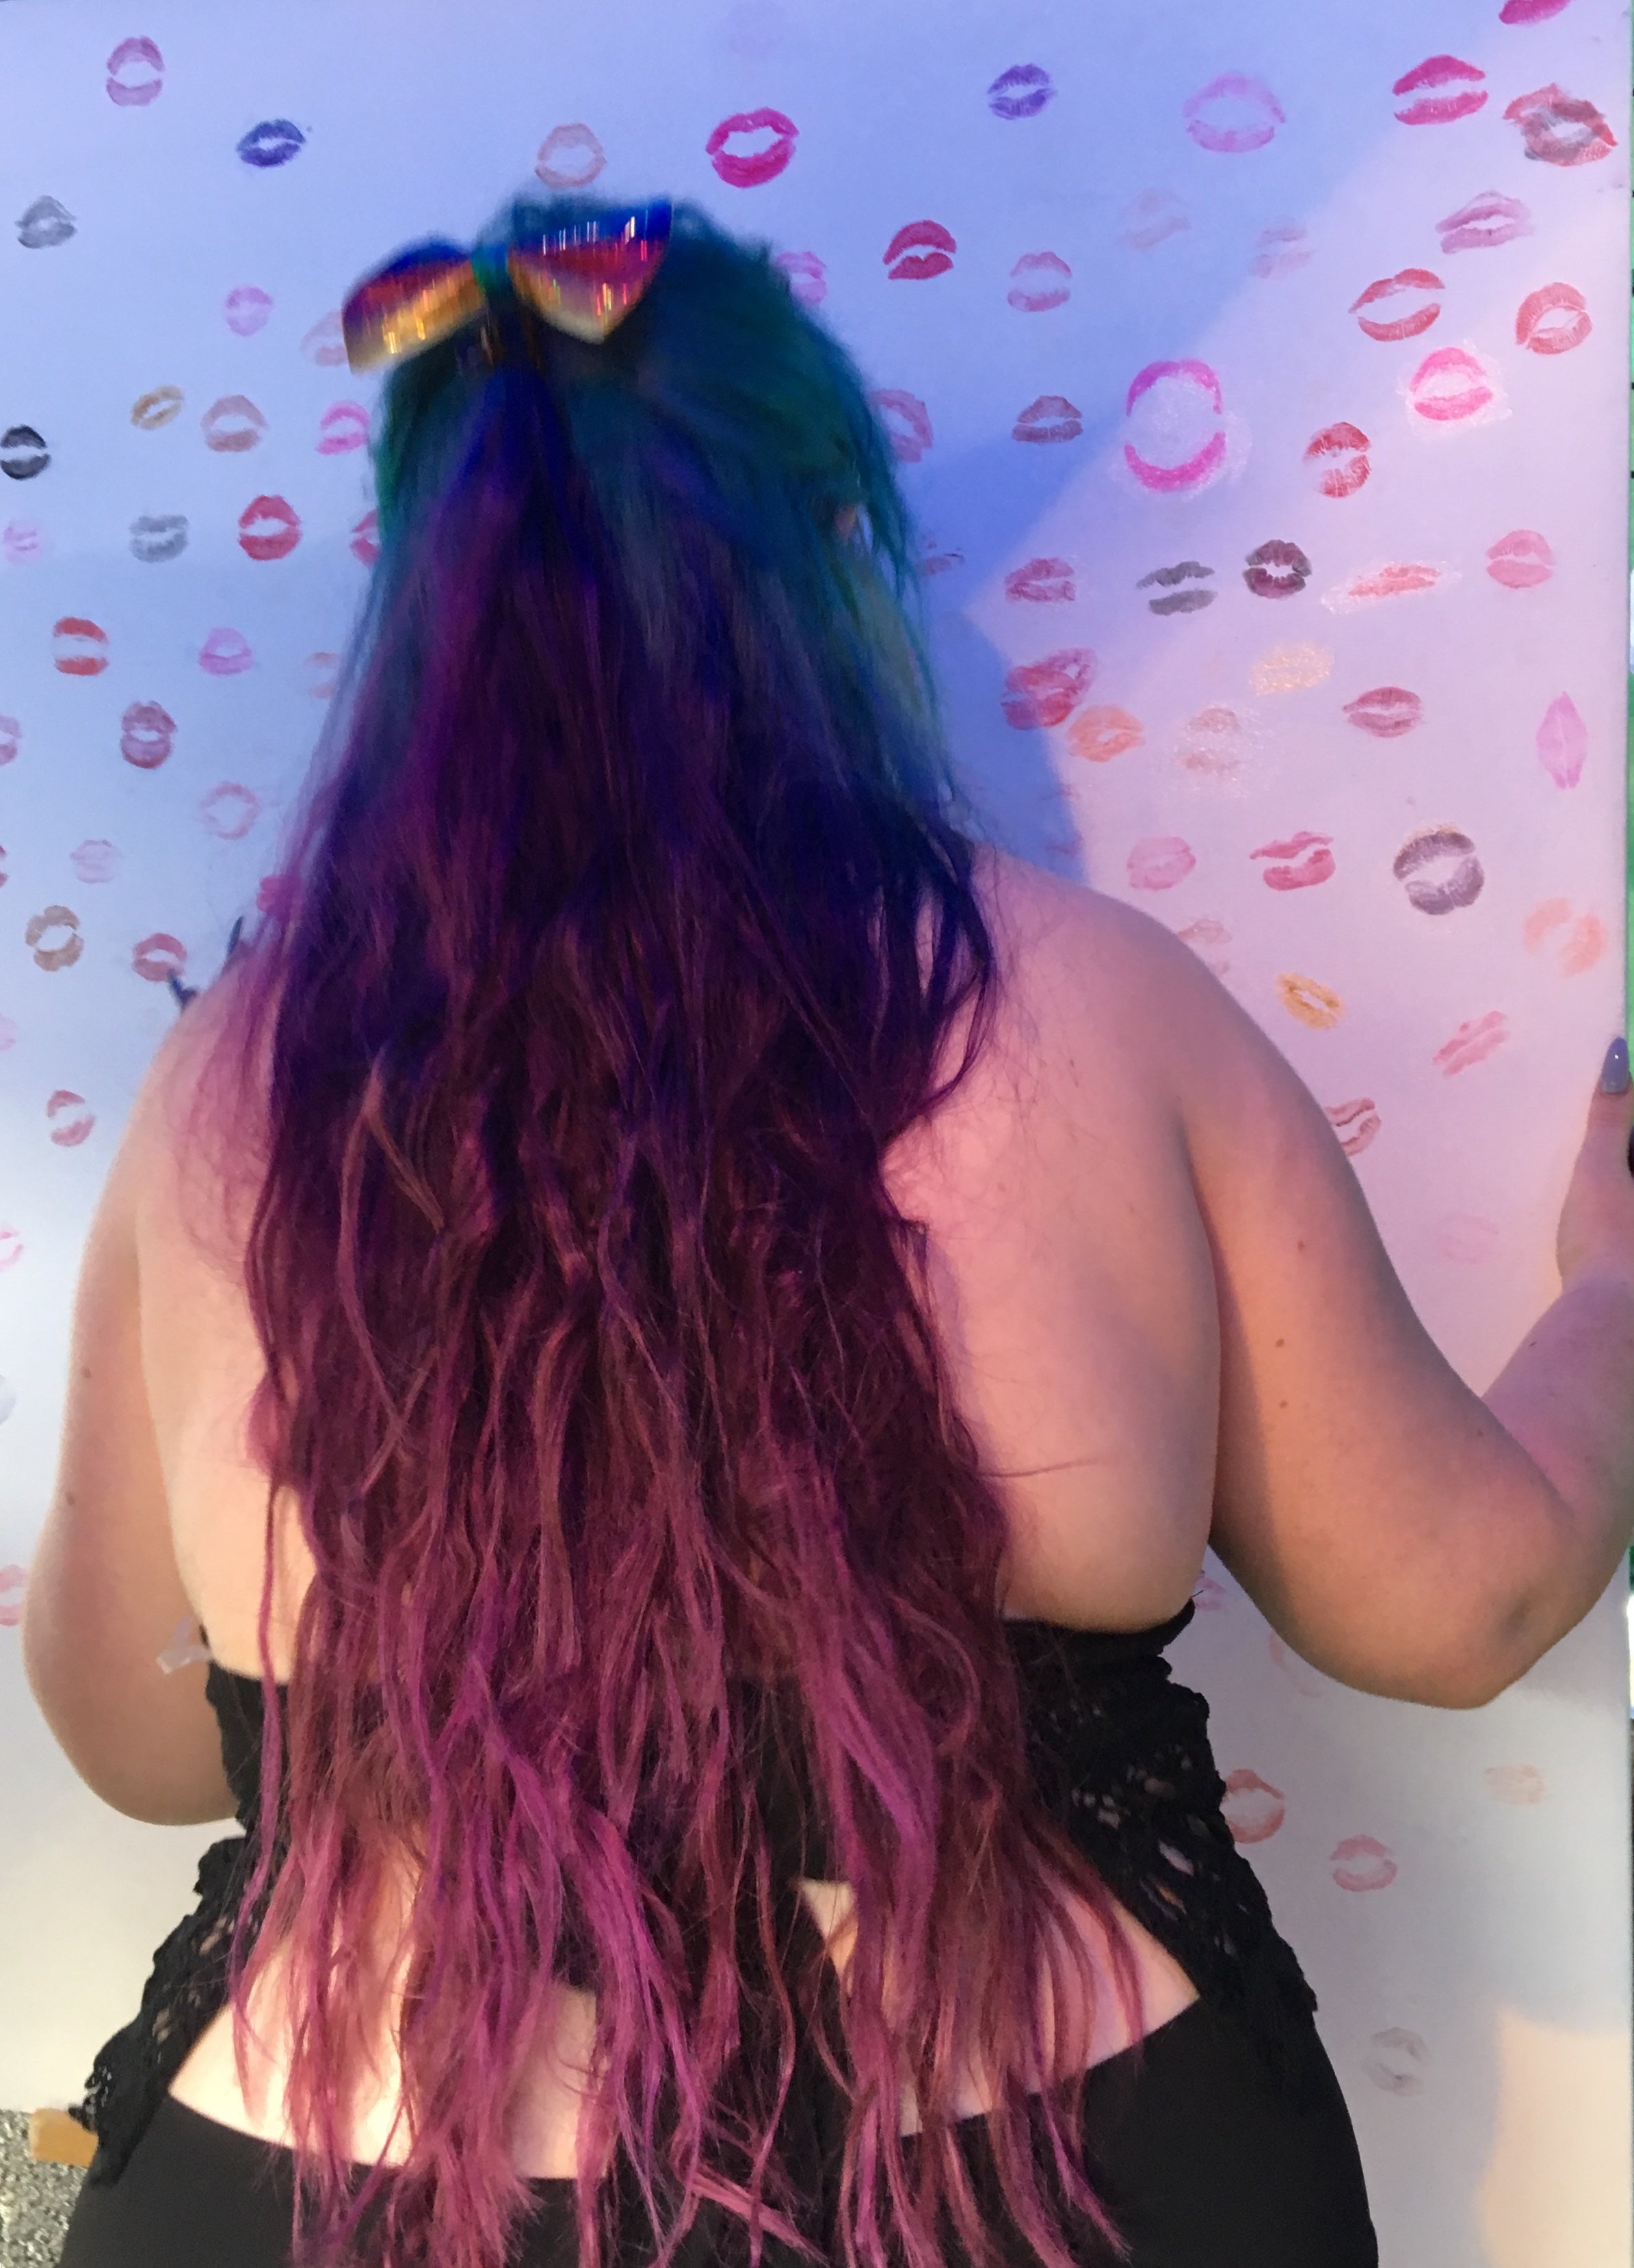 Kiss Painting: Toronto Pride 2018